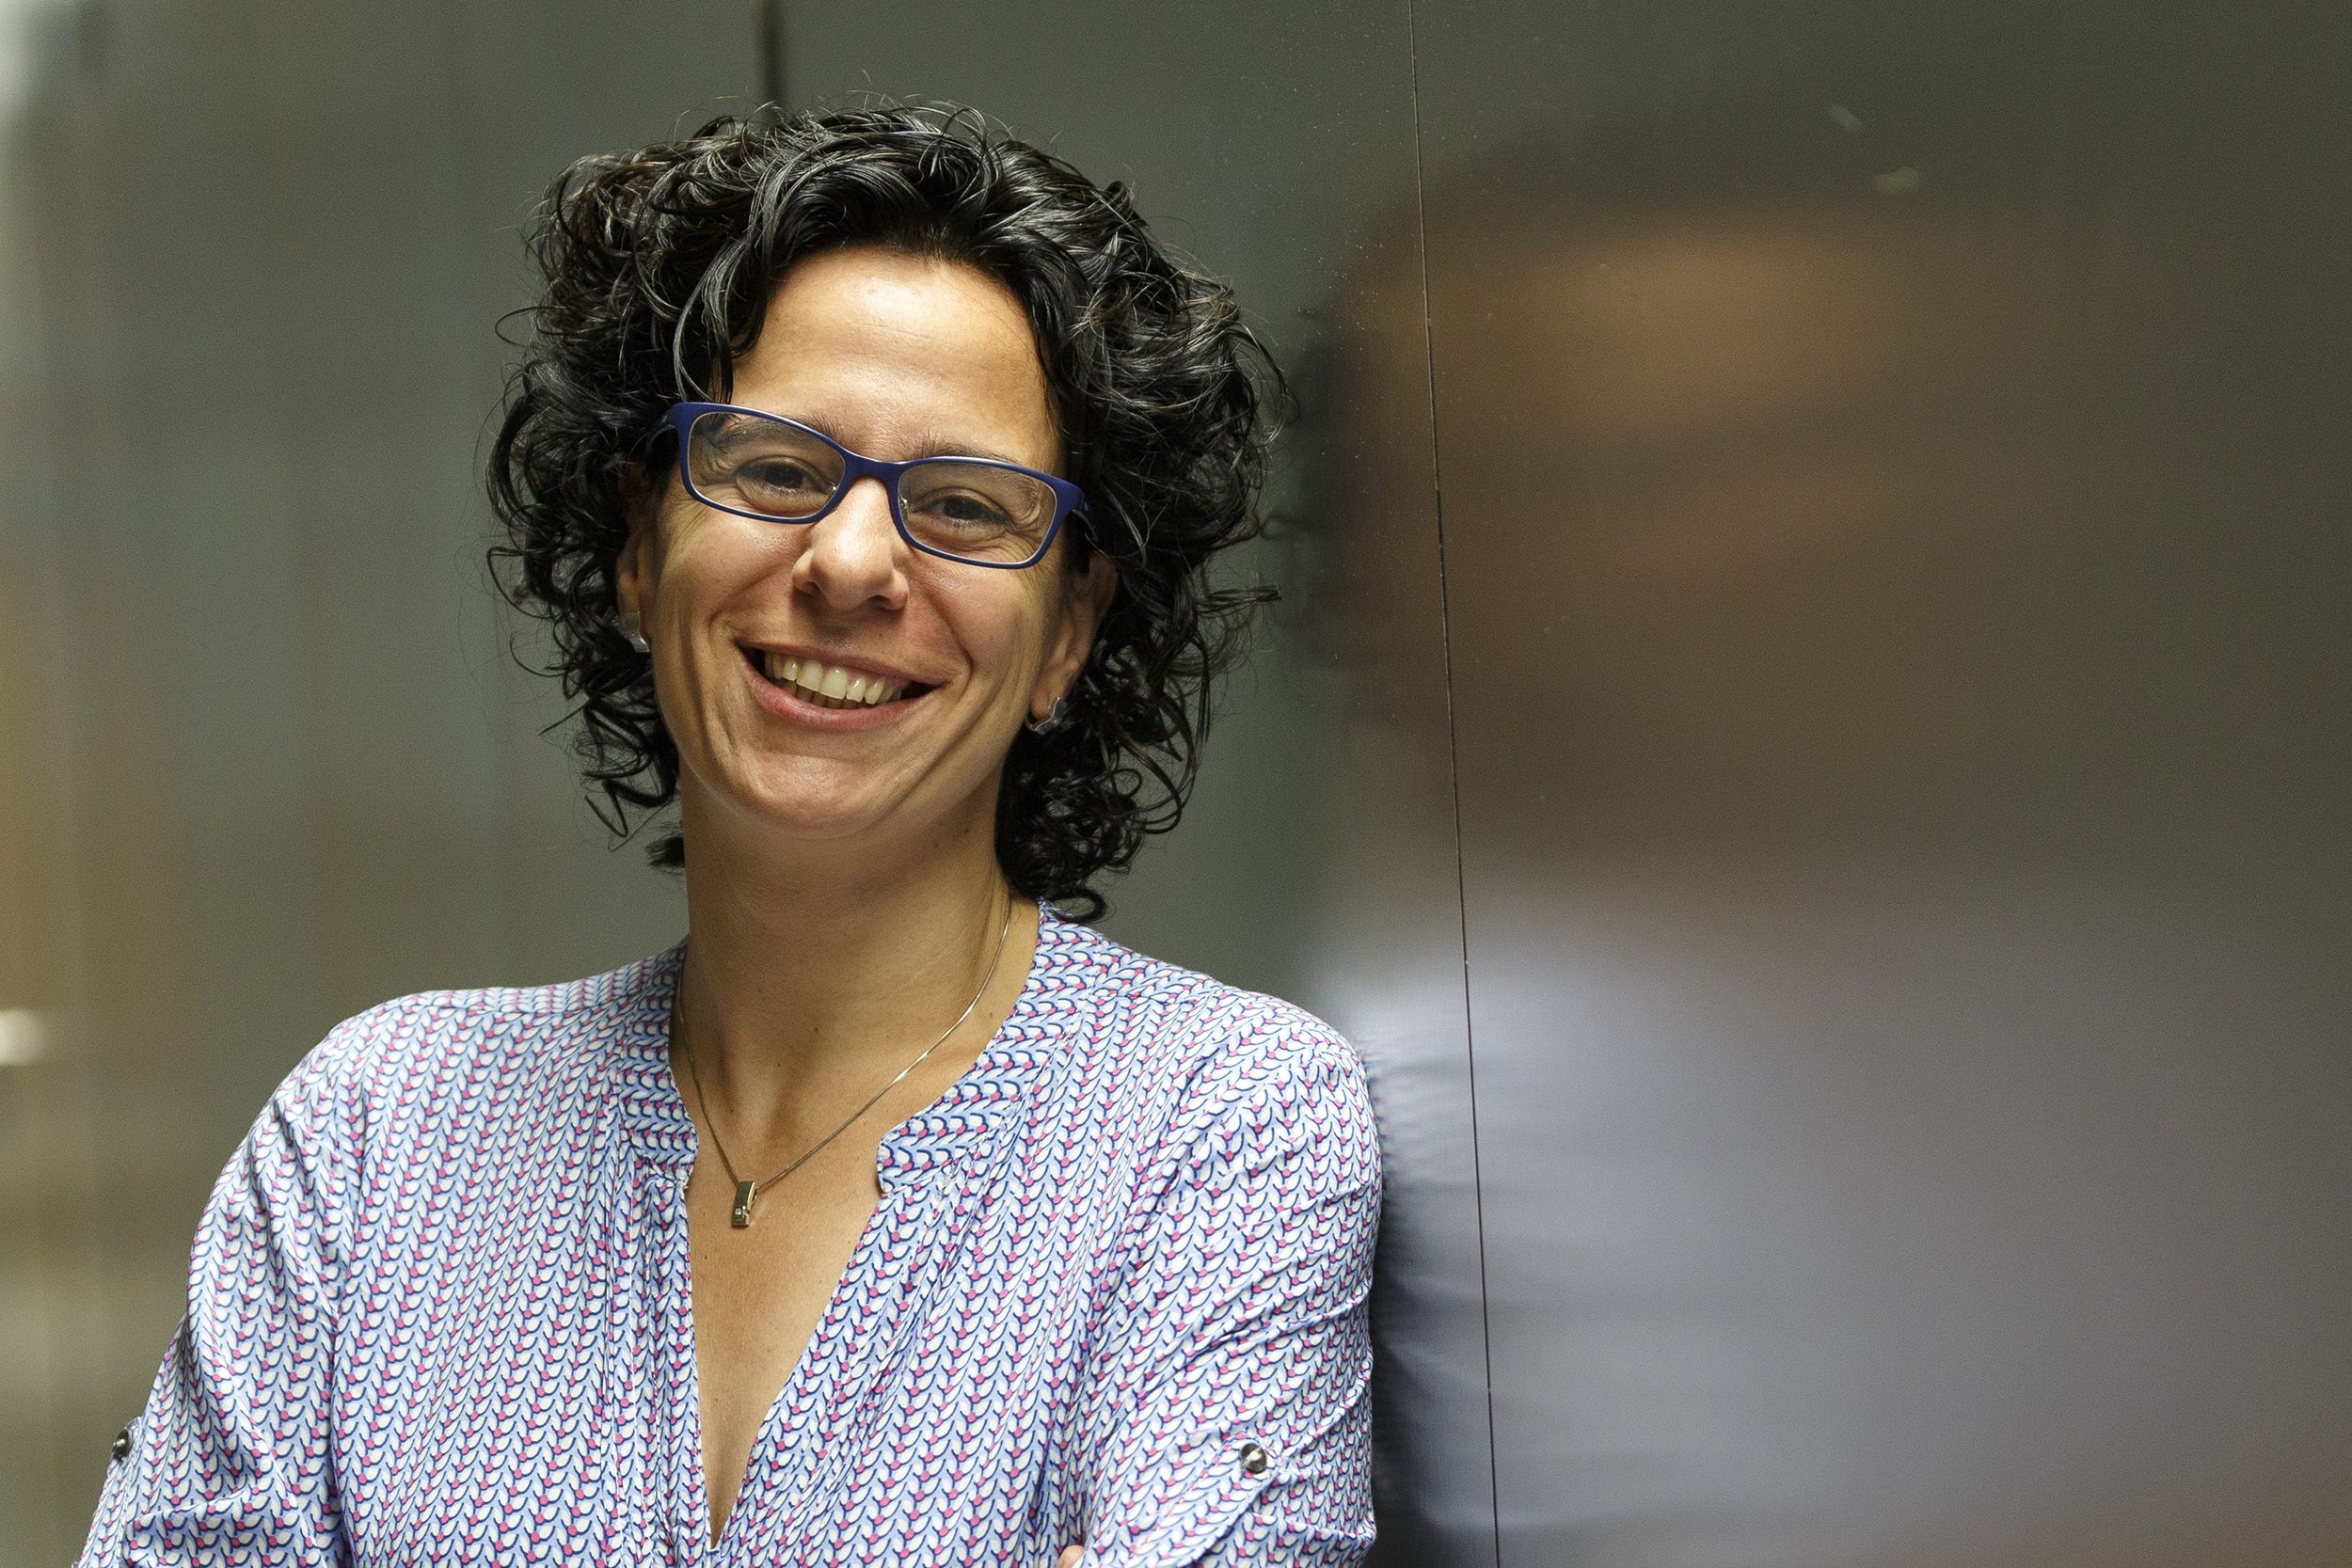 Núria López-Bigas rep el premi Banc Sabadell a la investigació biomèdica